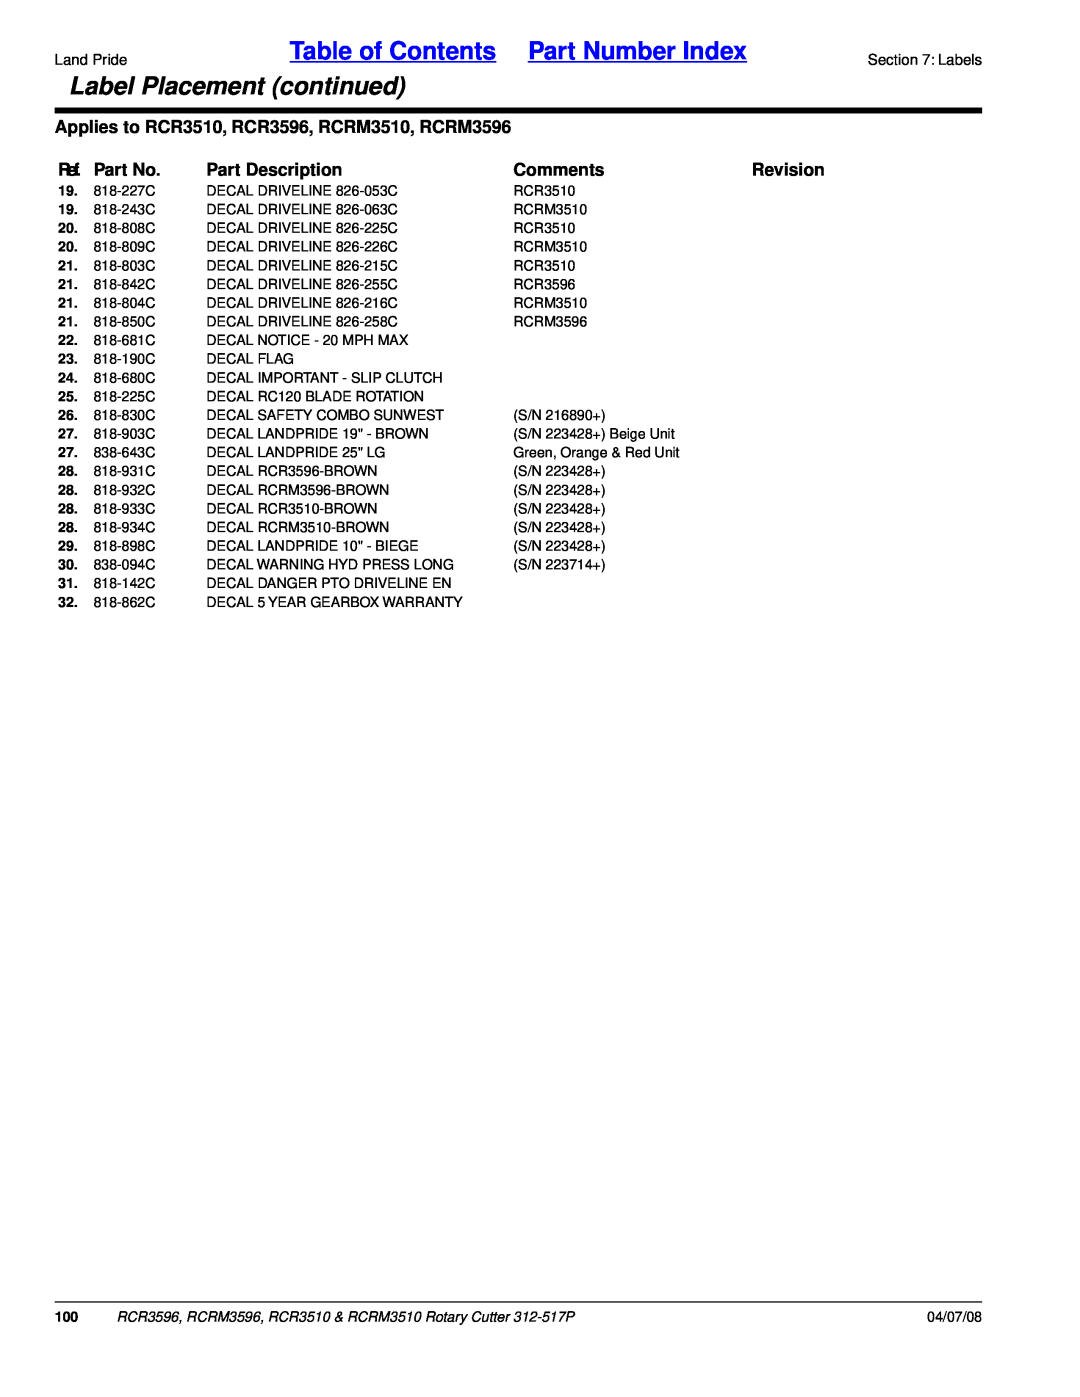 Land Pride RCR3510, RCR3596 Label Placement continued, Table of Contents Part Number Index, Ref. Part No, Part Description 